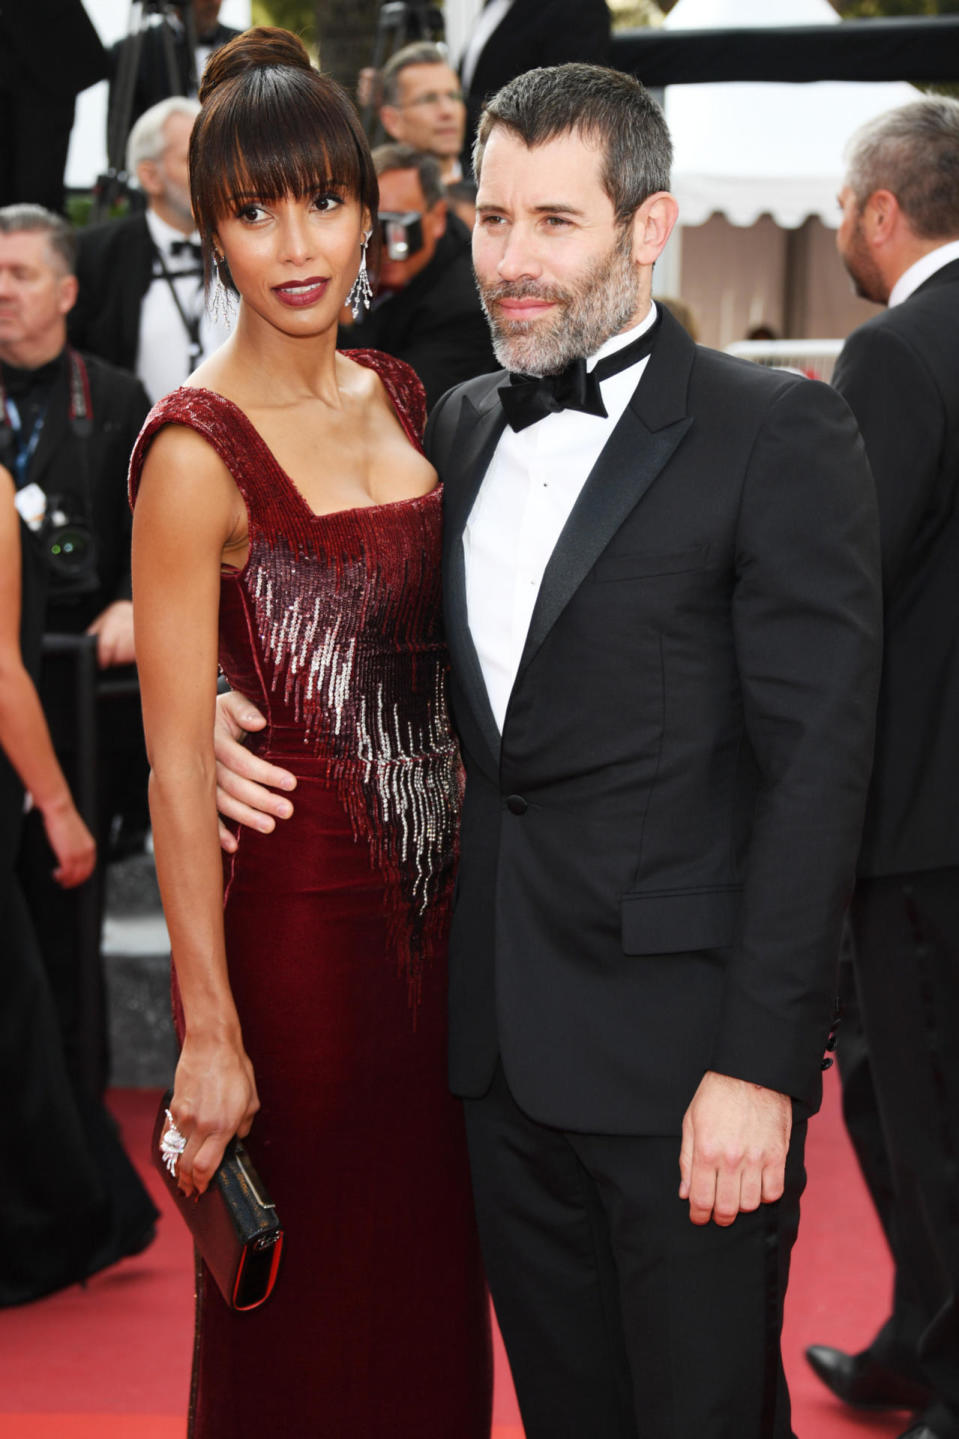 Sonia Rolland en Georges Chakra haute couture, accompagnée de Jalil Lespert, sur le tapis rouge du Festival de Cannes avant la projection du film “Loving” de Jeff Nichols.